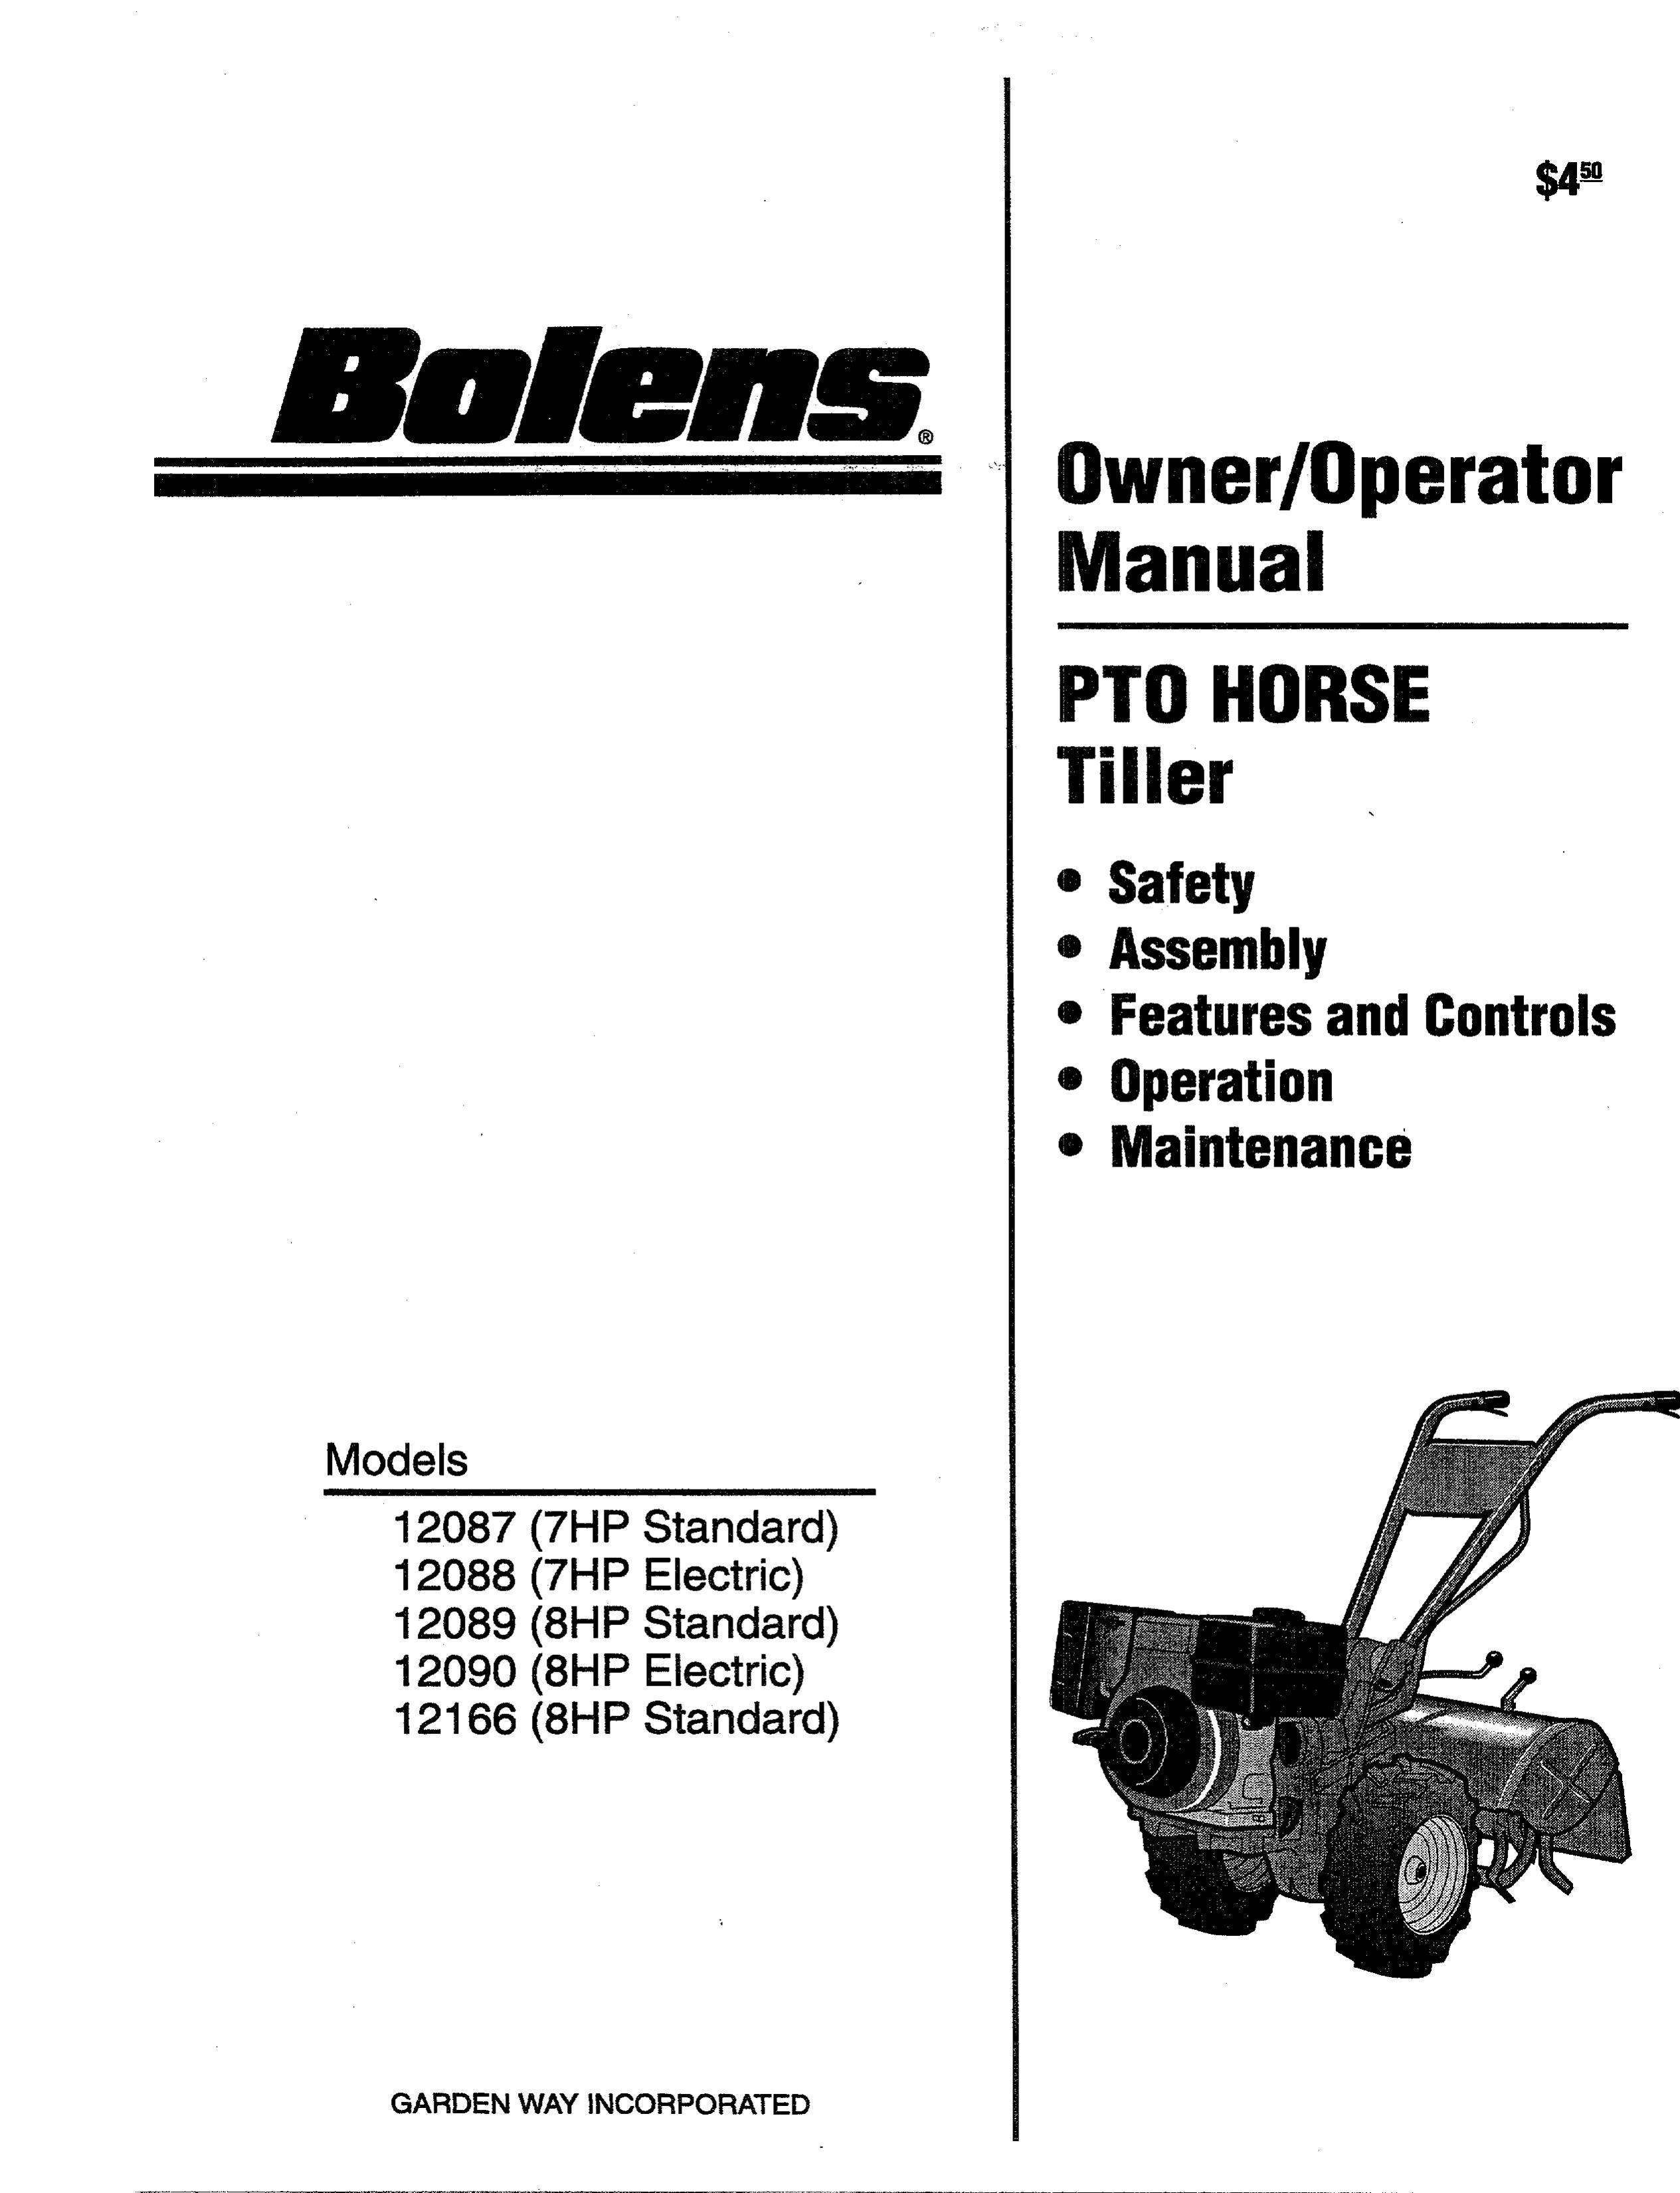 Bolens 12087-7HP Tiller User Manual